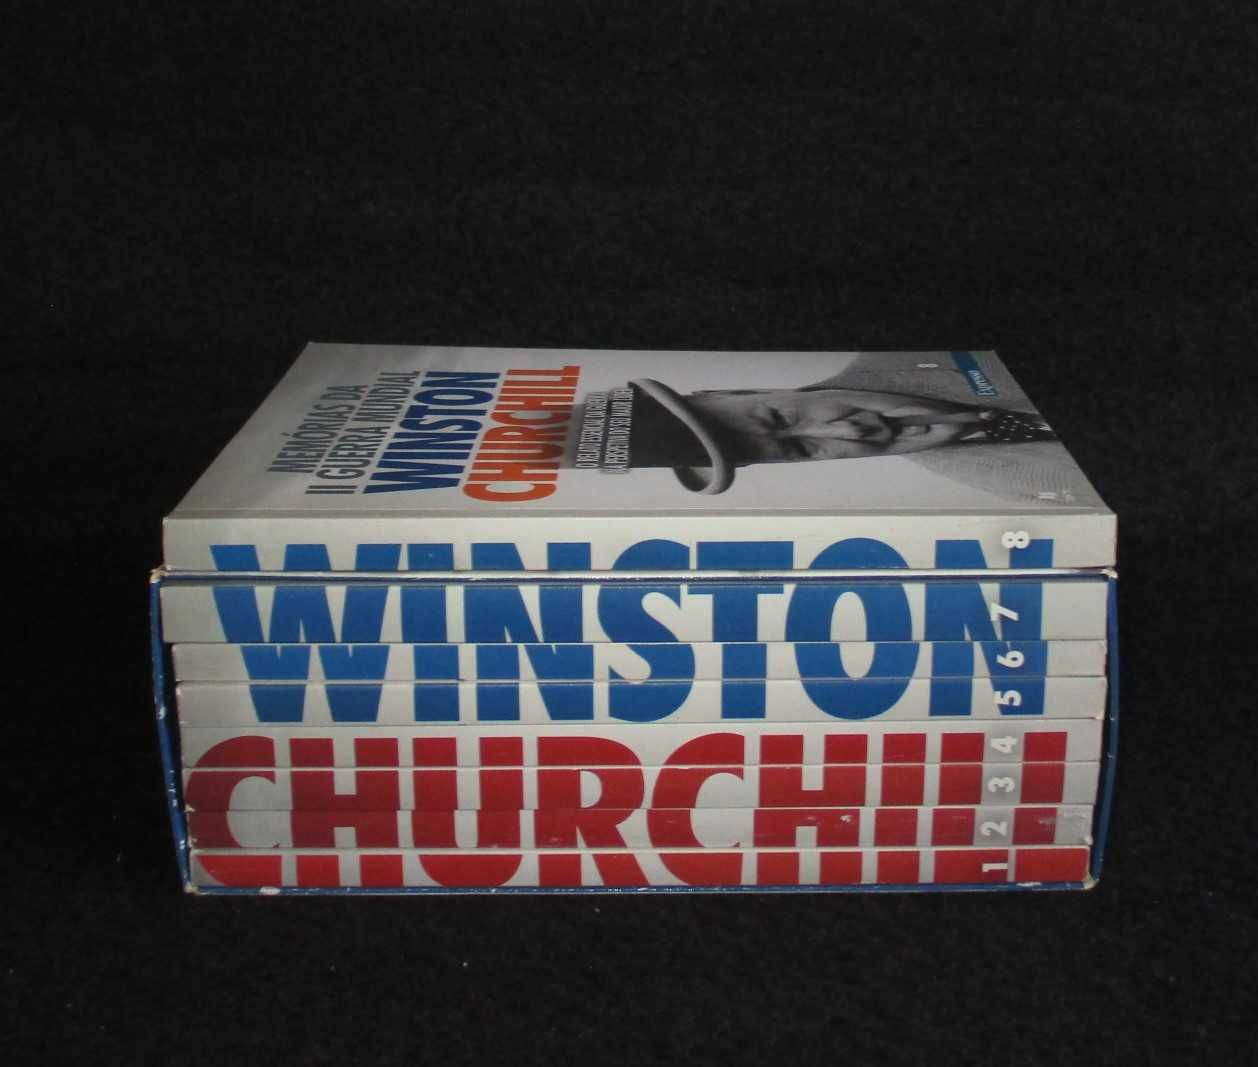 Livros Memórias da II Guerra Mundial Churchill Expresso Completa